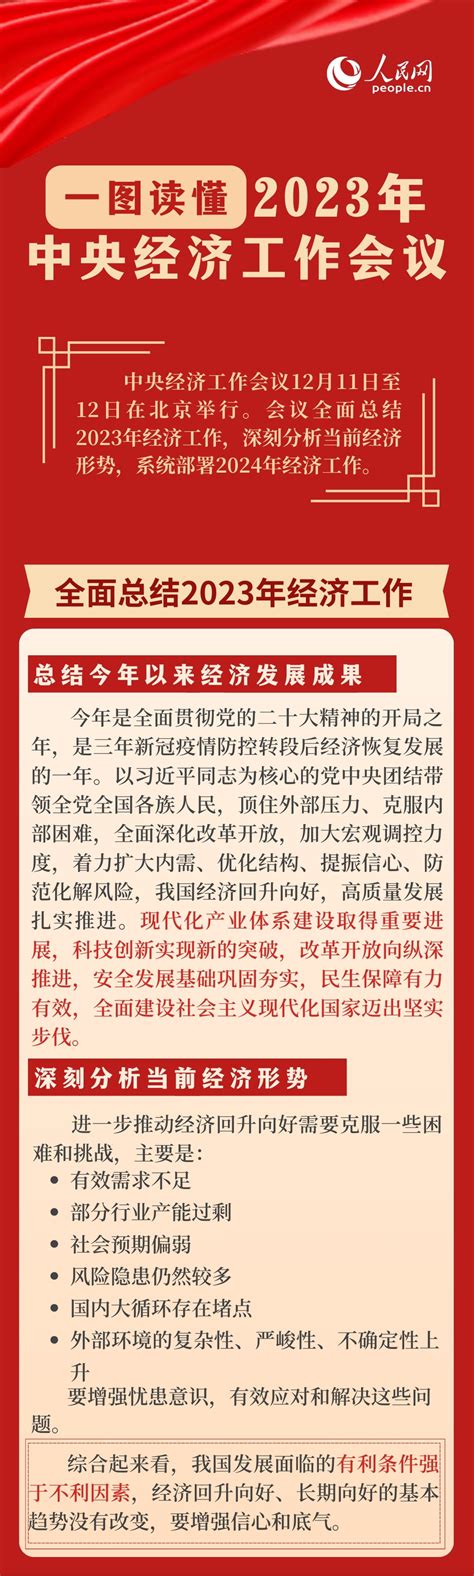 一图读懂2023年中央经济工作会议_时政要闻_中国台湾网